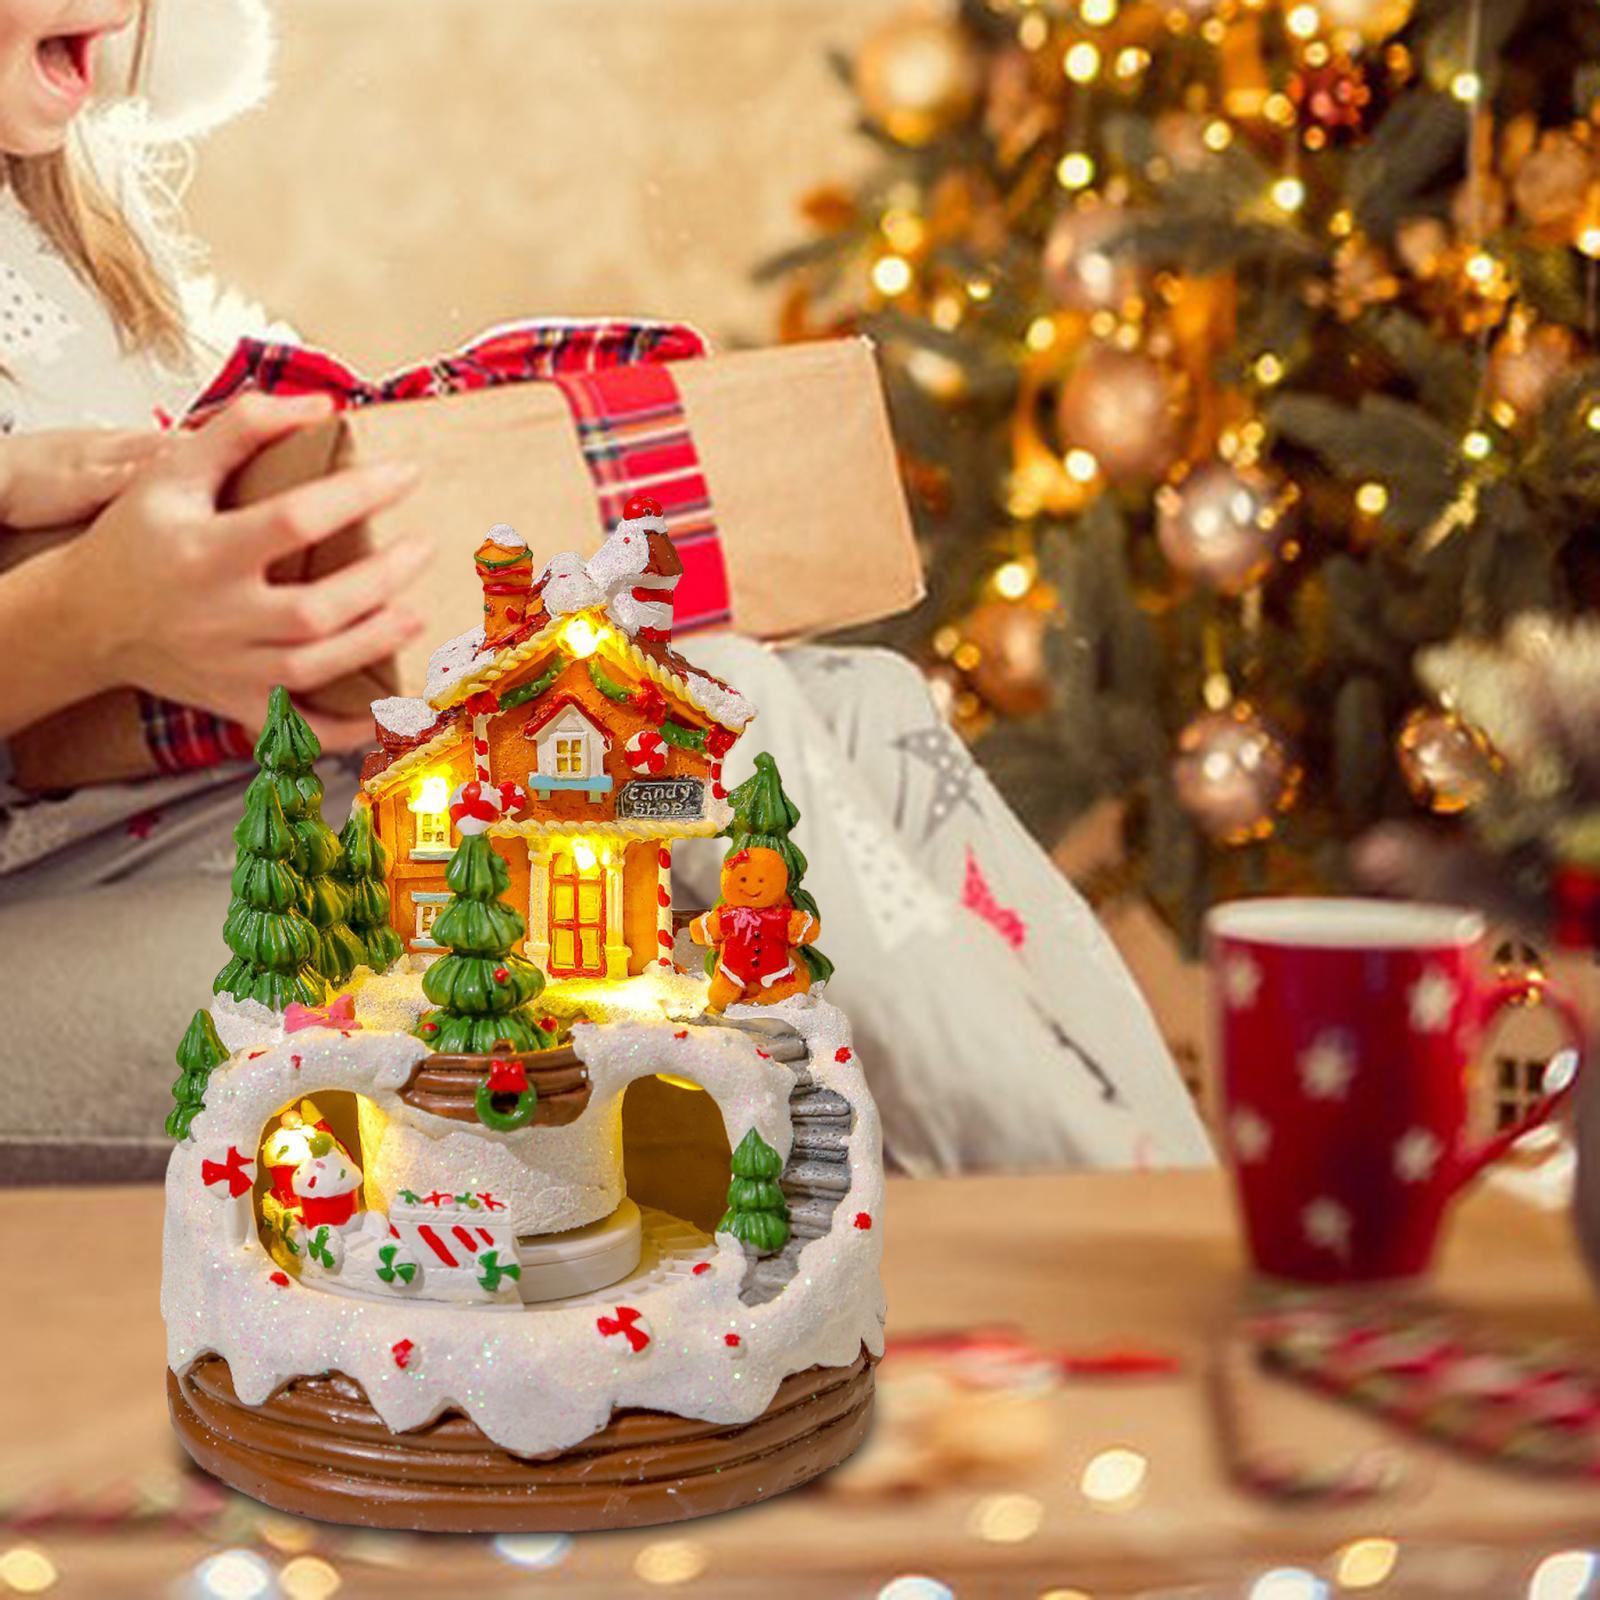 Loviver Music Box Decor Resin Christmas Villages Houses for Festive Indoor